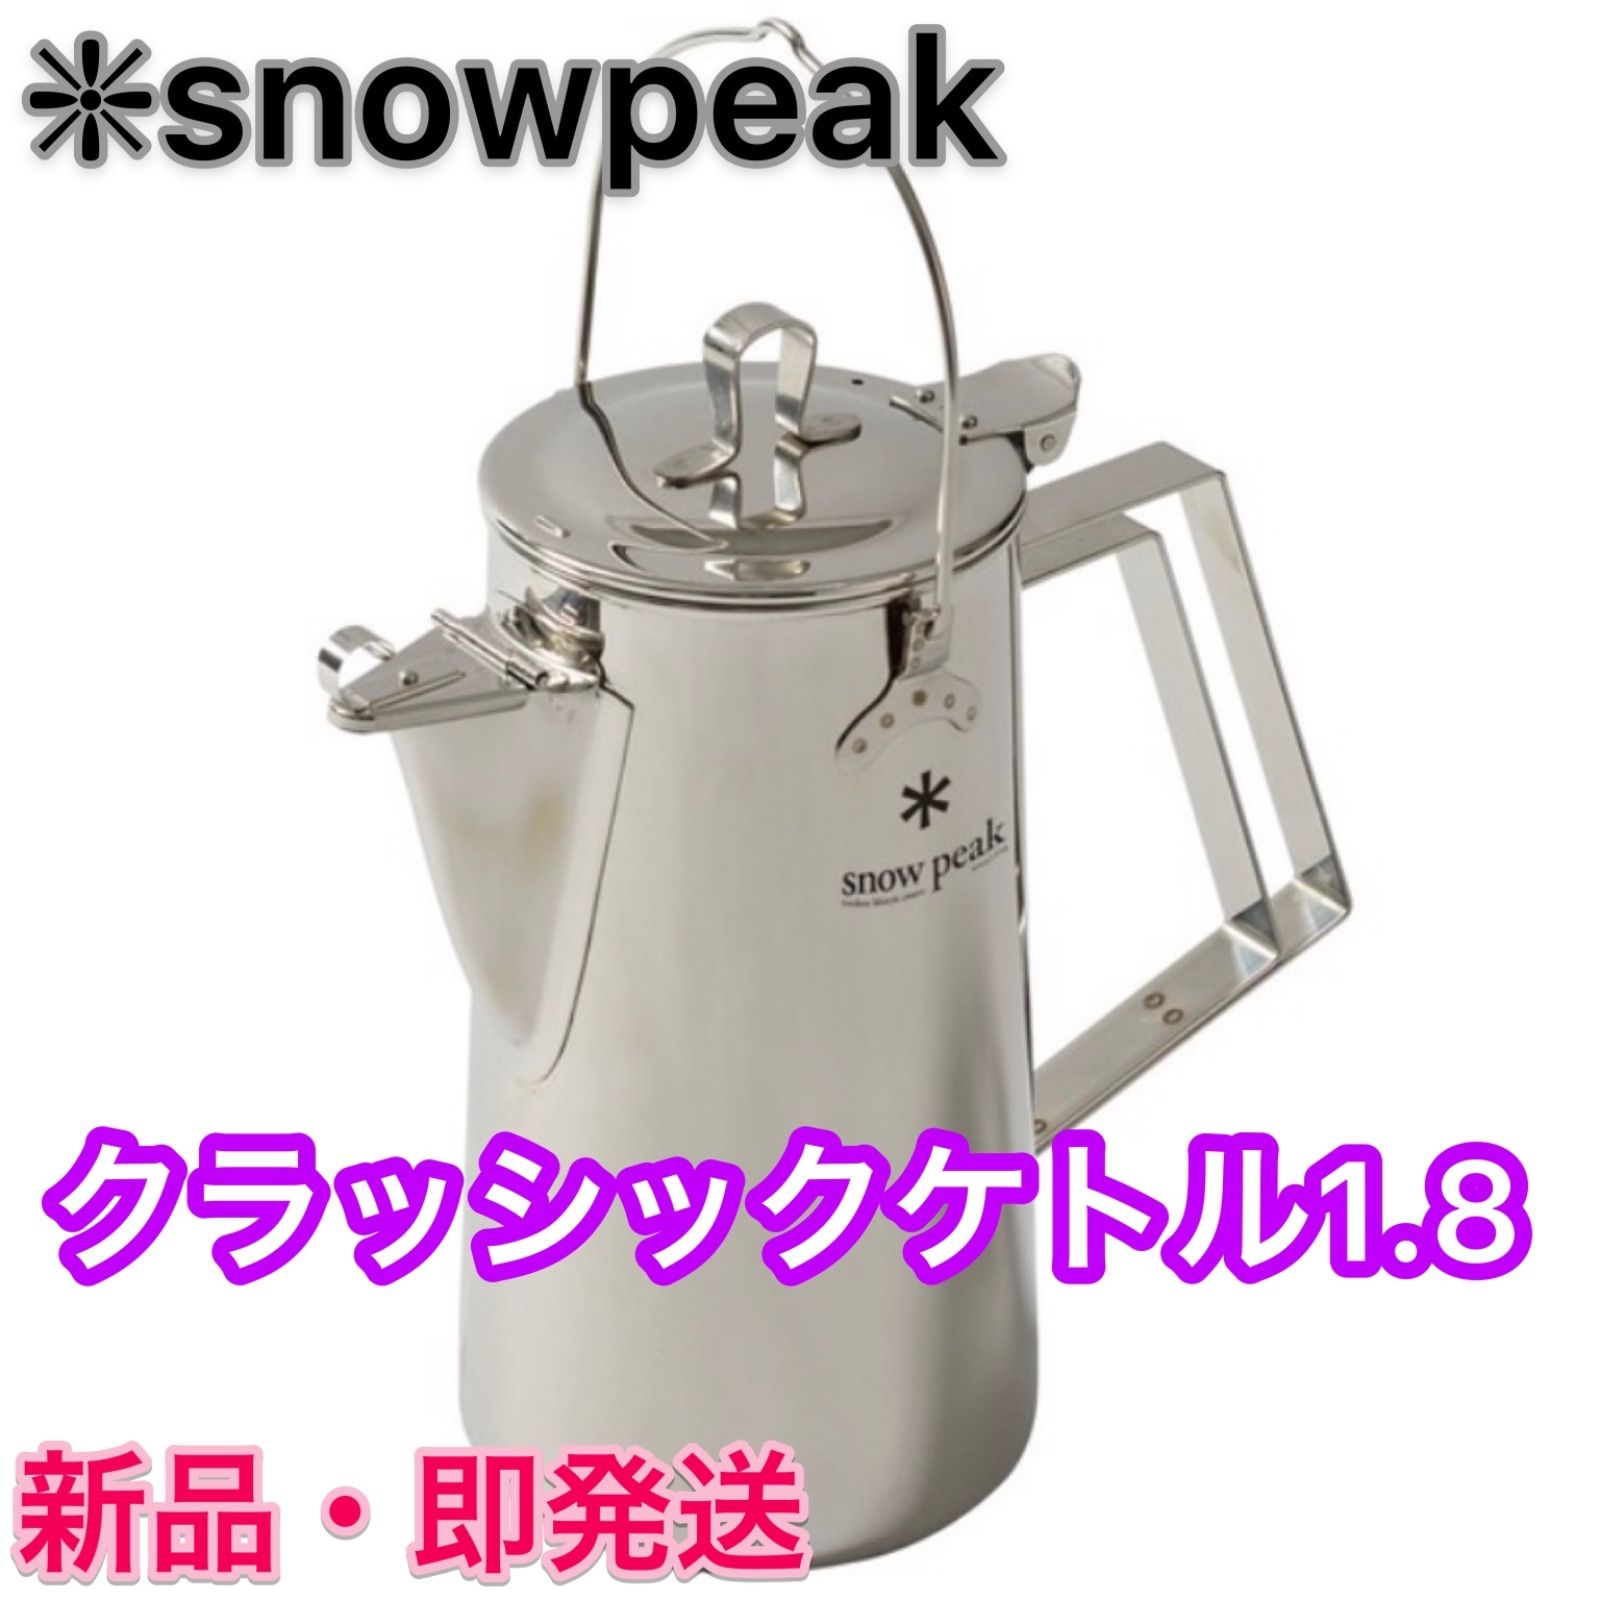 スノーピーク クラッシックケトル1.8 ⭐️ snow peak★【新品未開封】